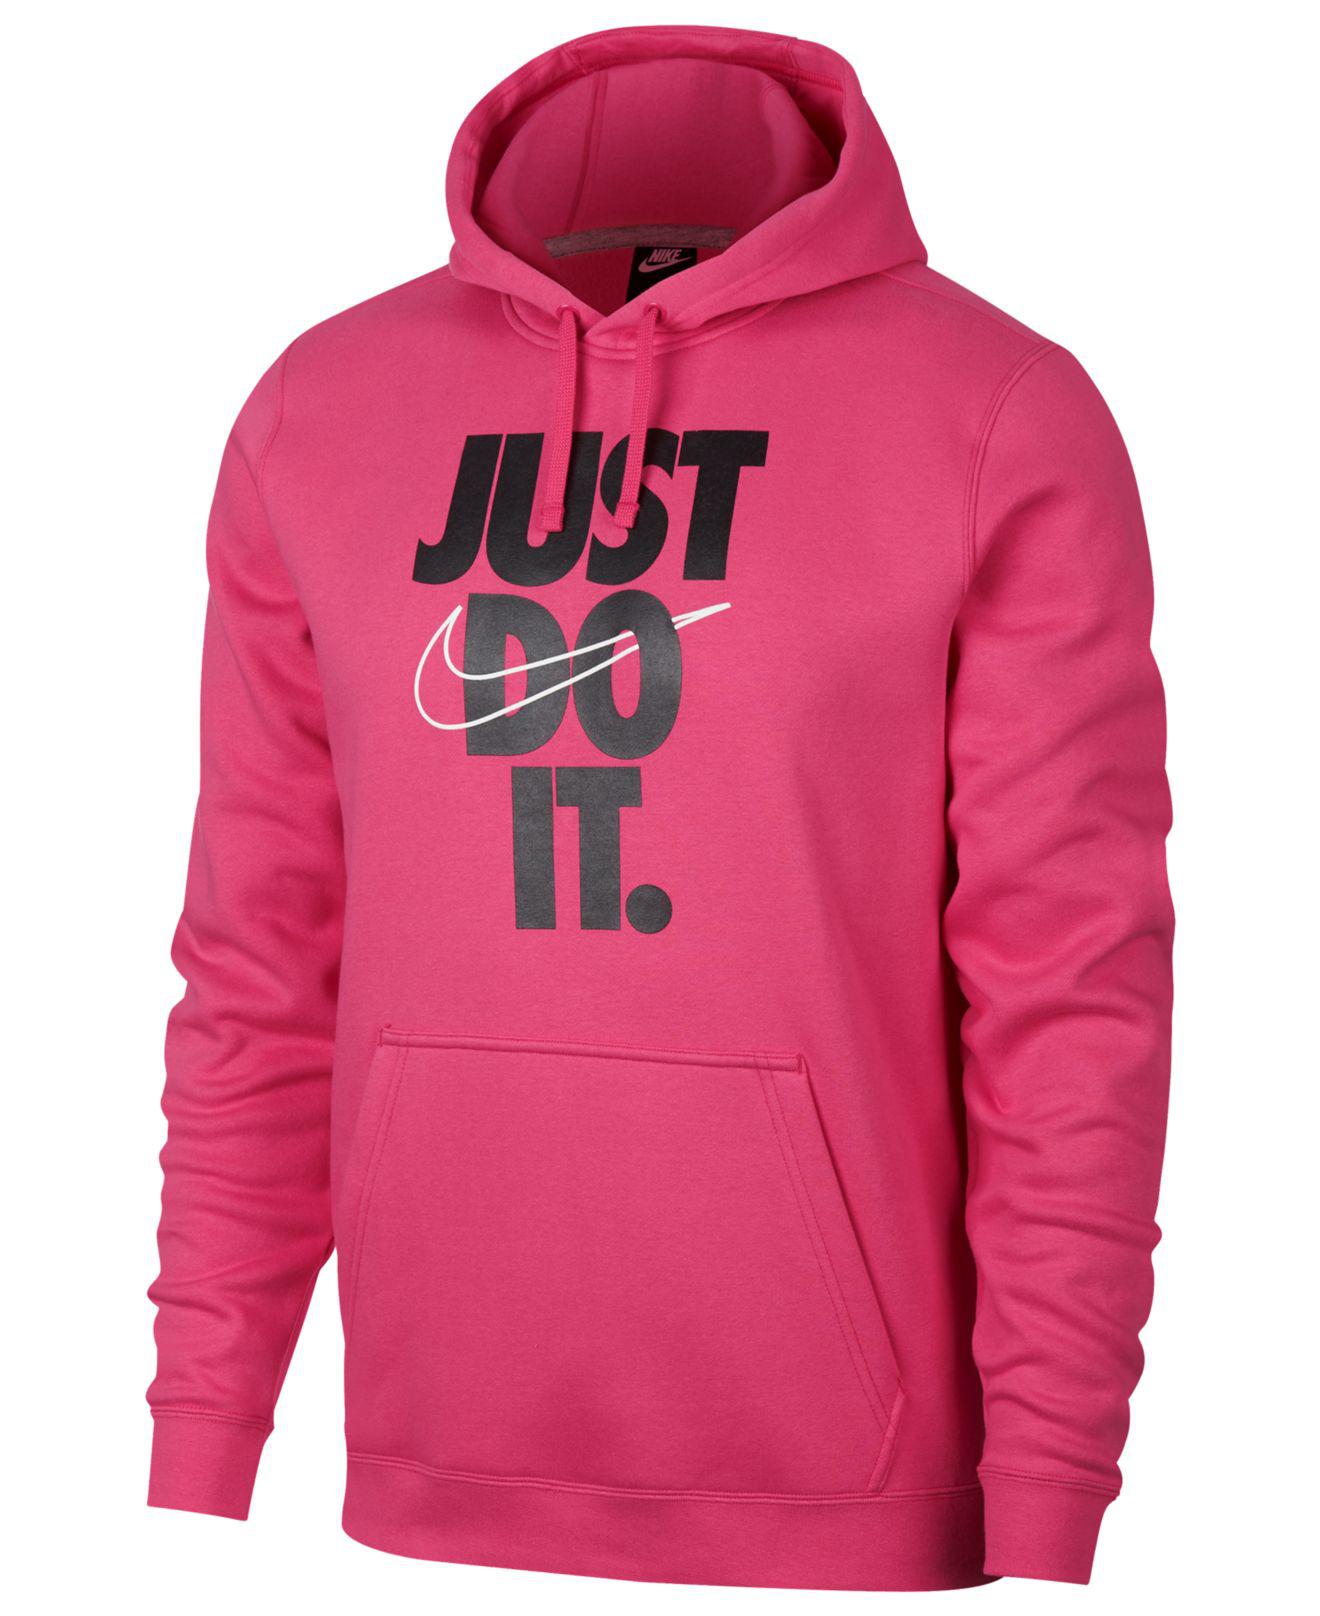 Nike Fleece Sportswear Just Do It Hoodie in Pink for Men - Lyst